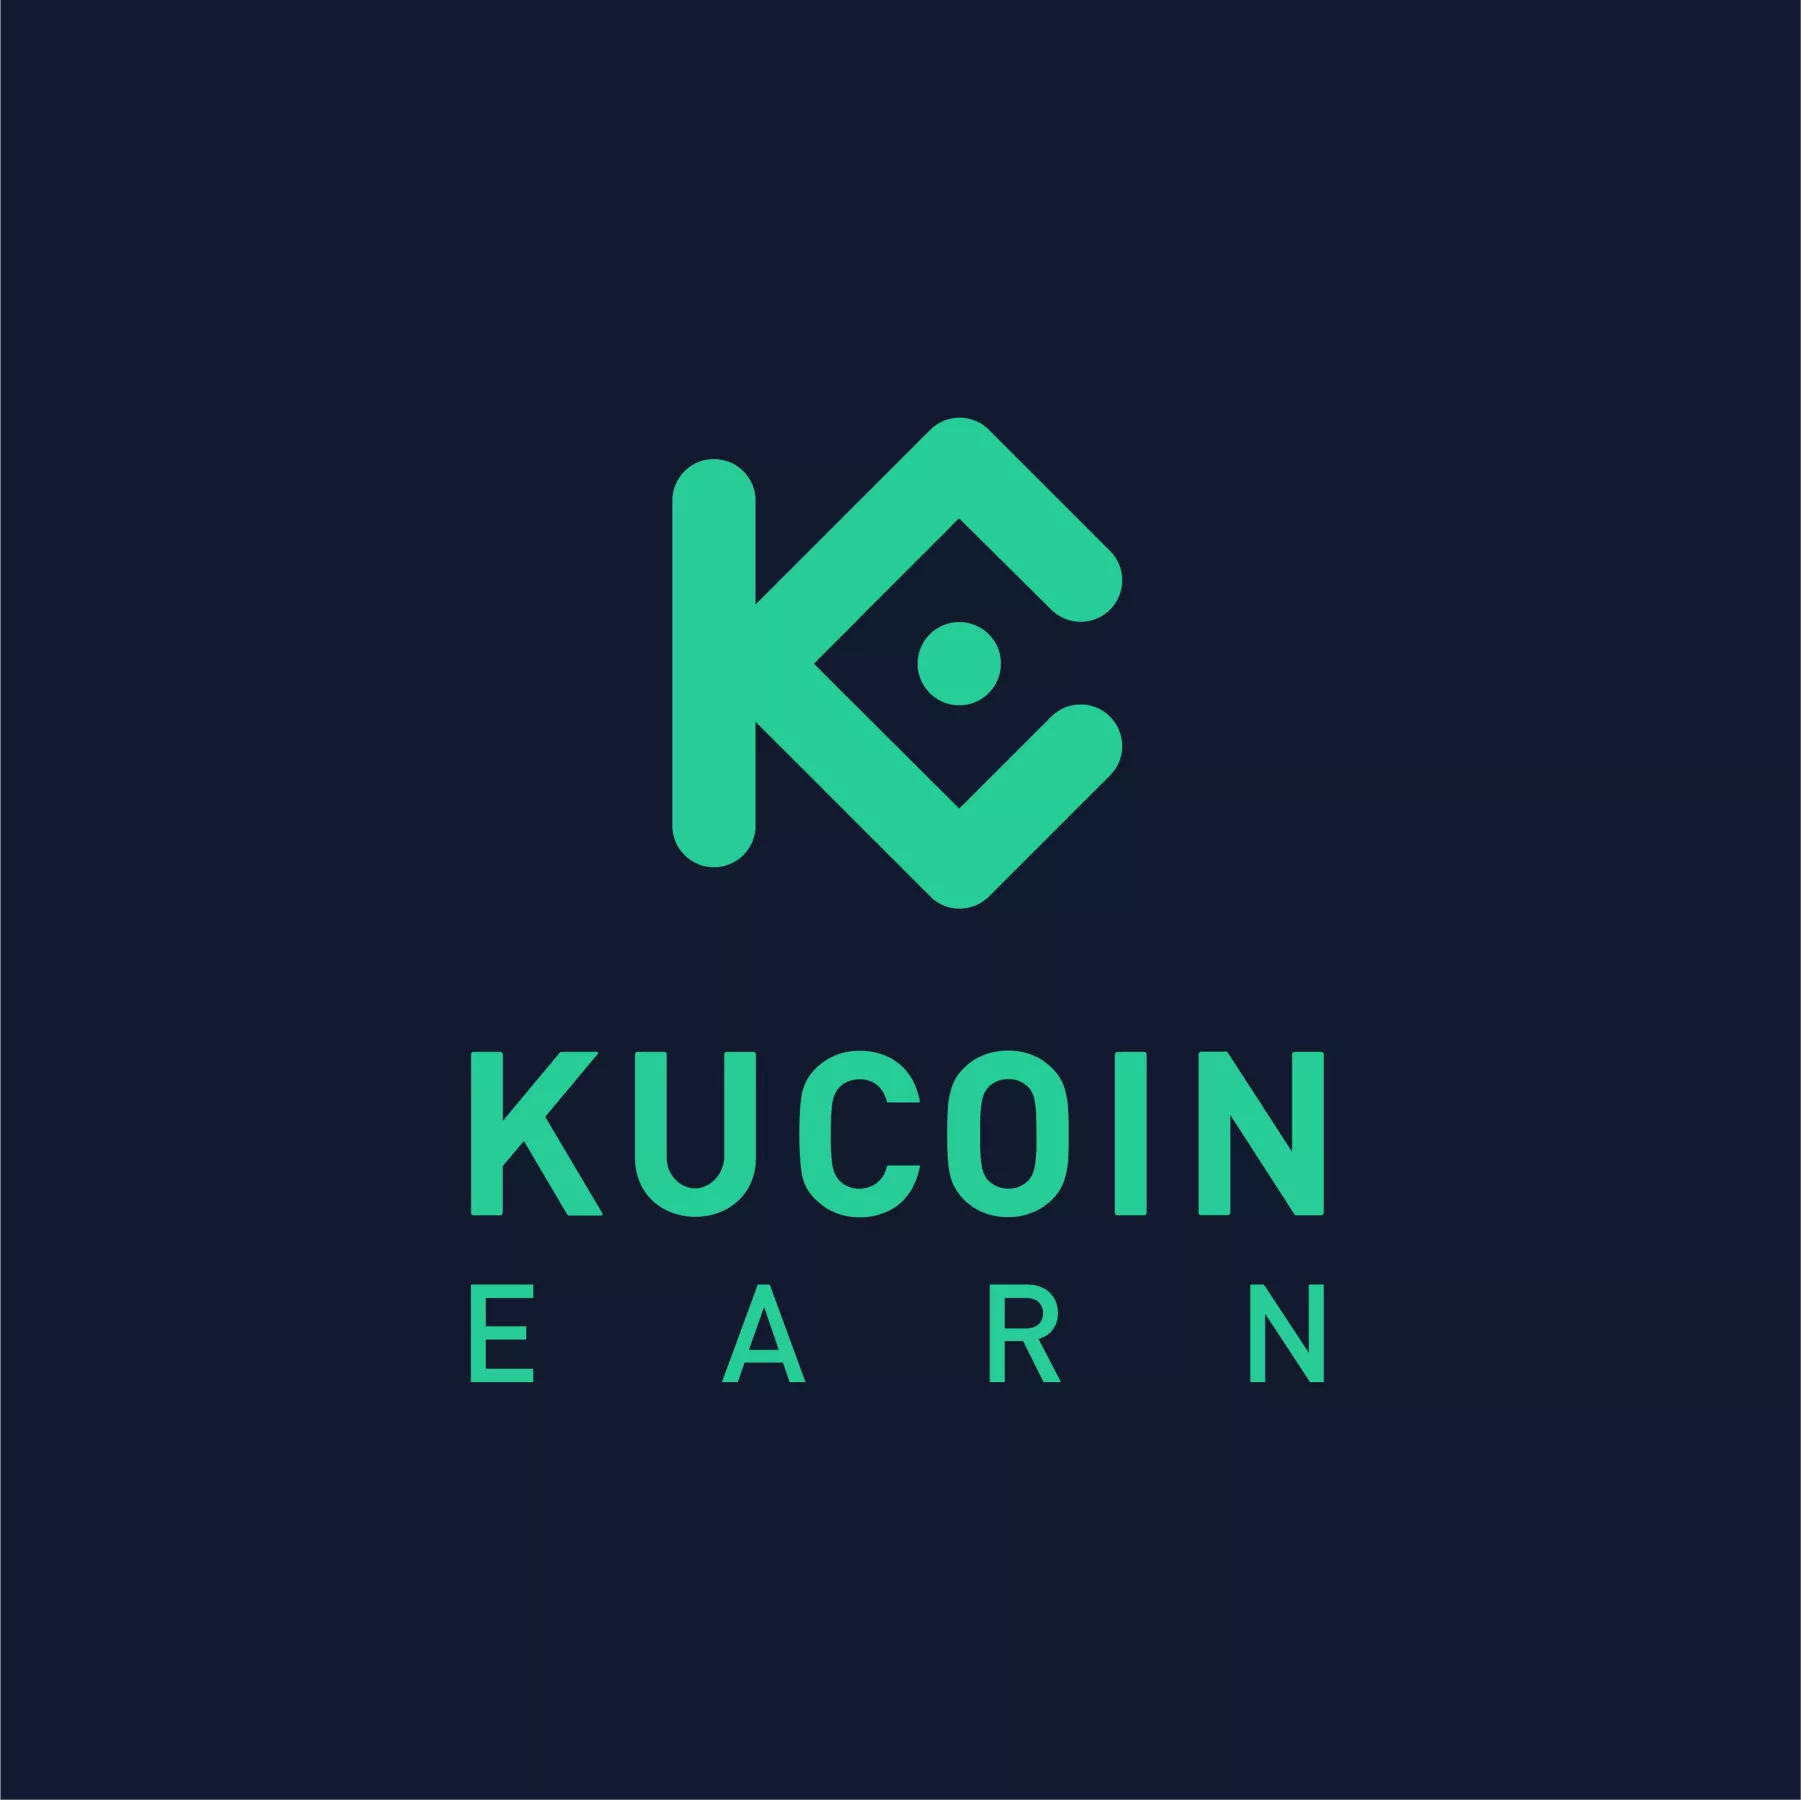 KuCoin earn